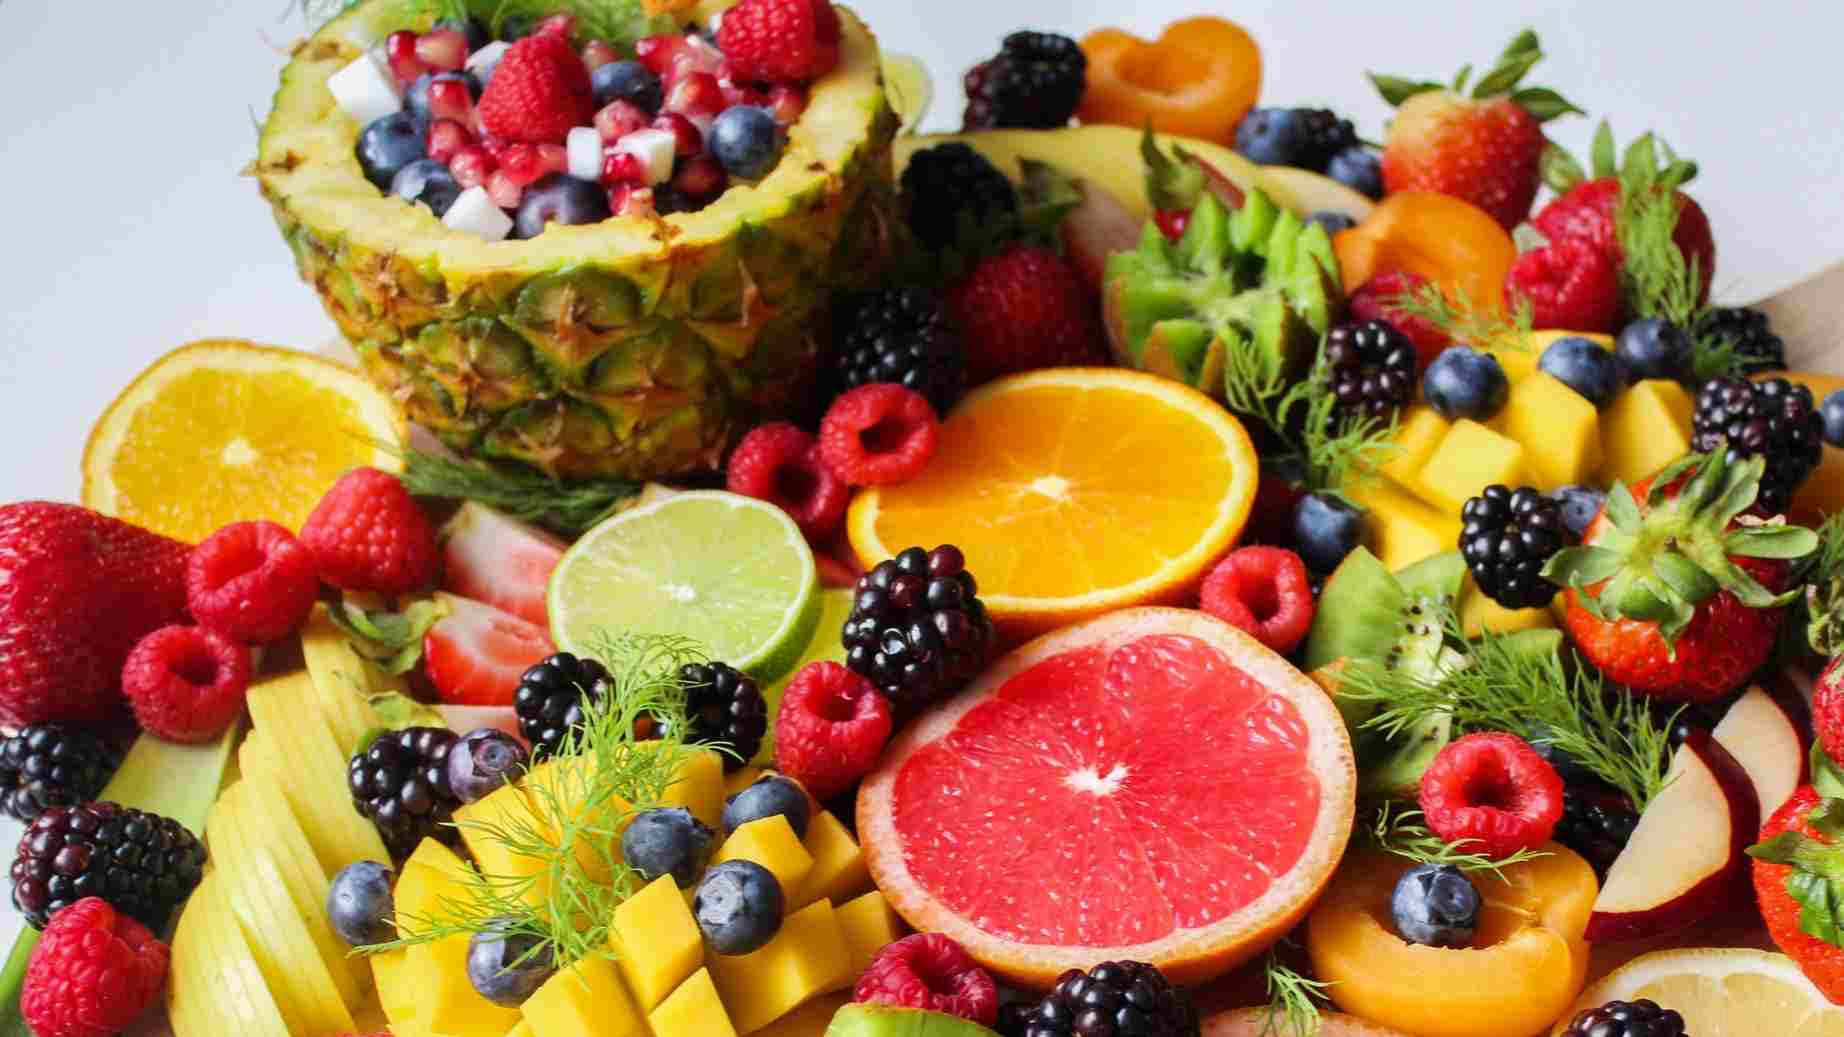 A Tropical Fruit Salad Display